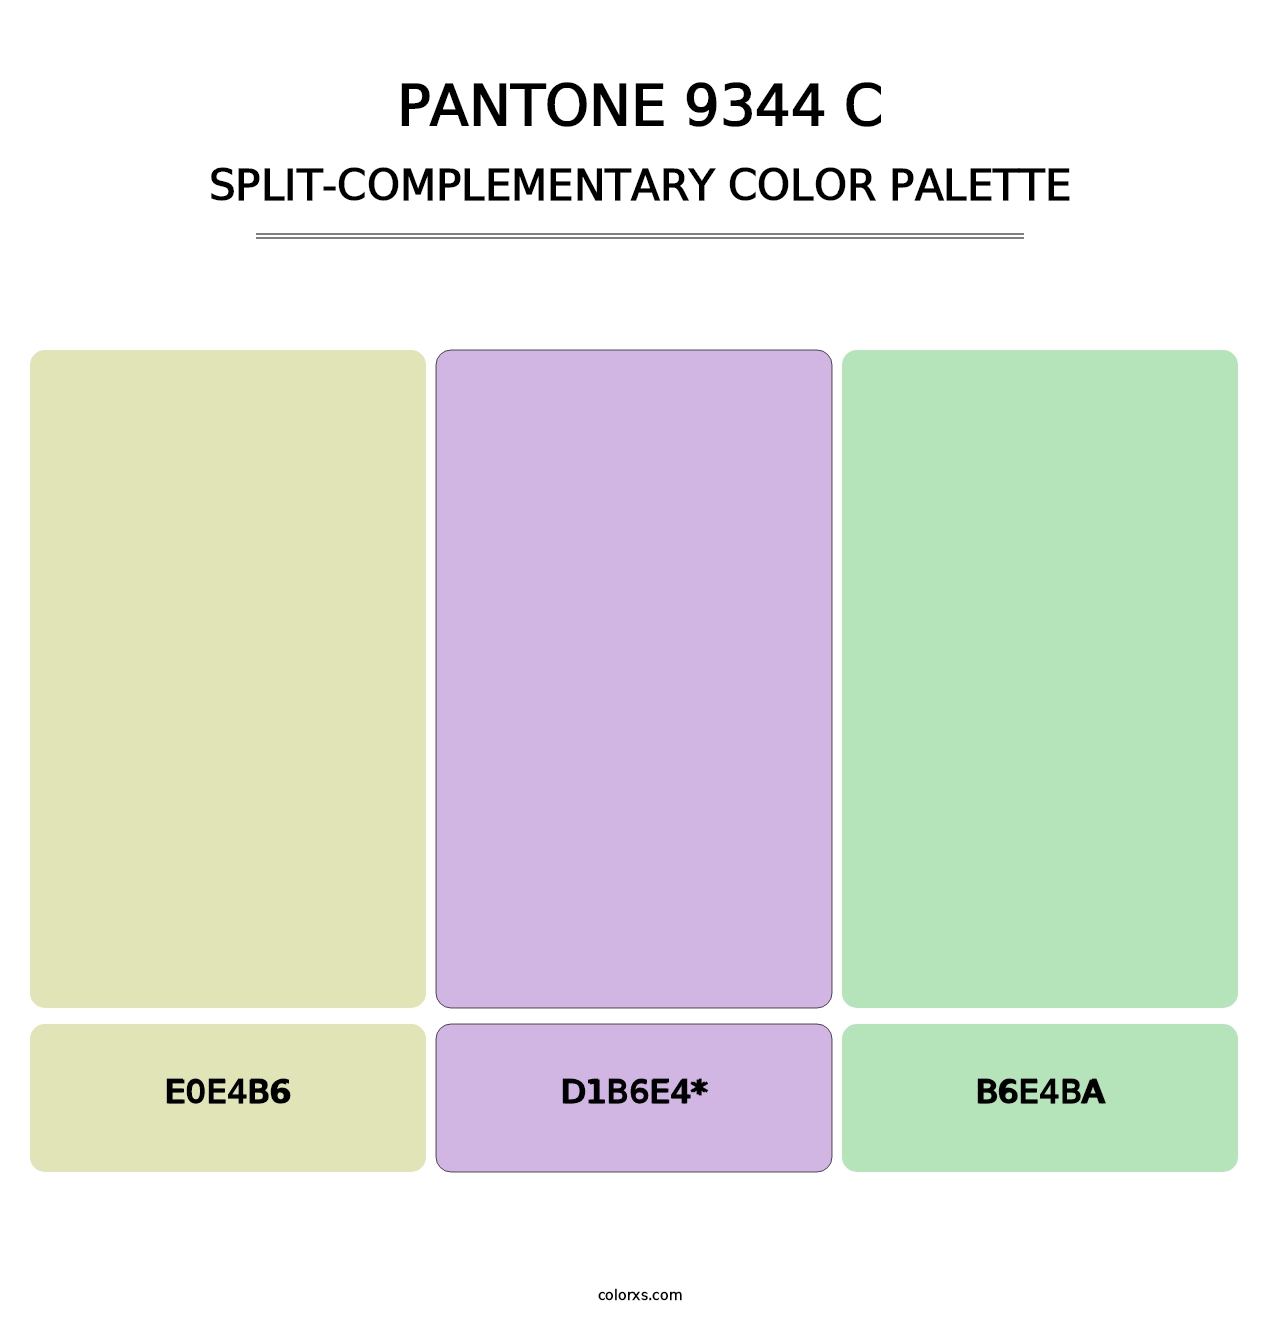 PANTONE 9344 C - Split-Complementary Color Palette